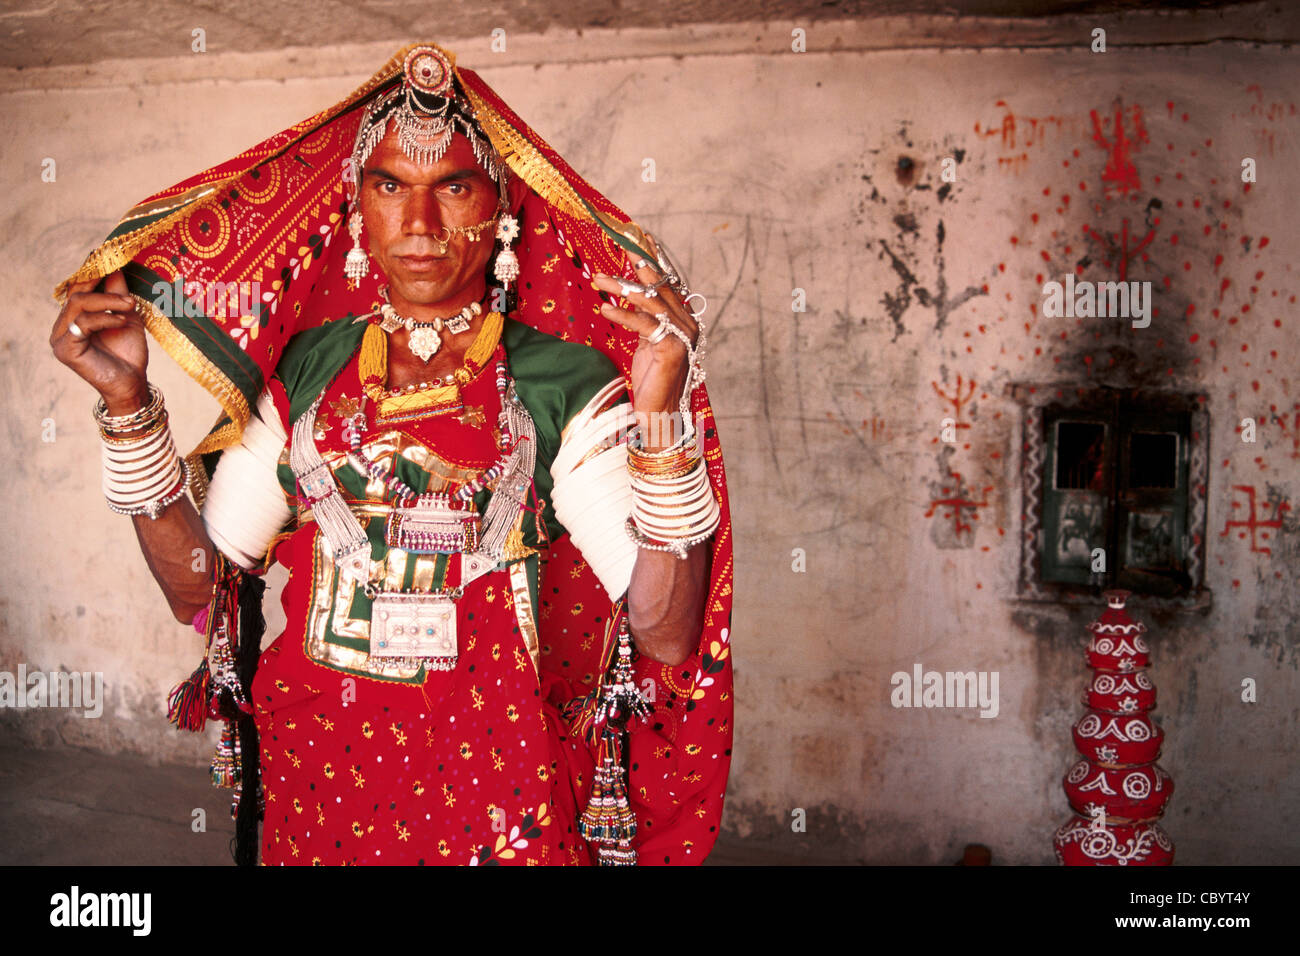 Un acteur est habillé en femme pour un spectacle (Inde) Banque D'Images